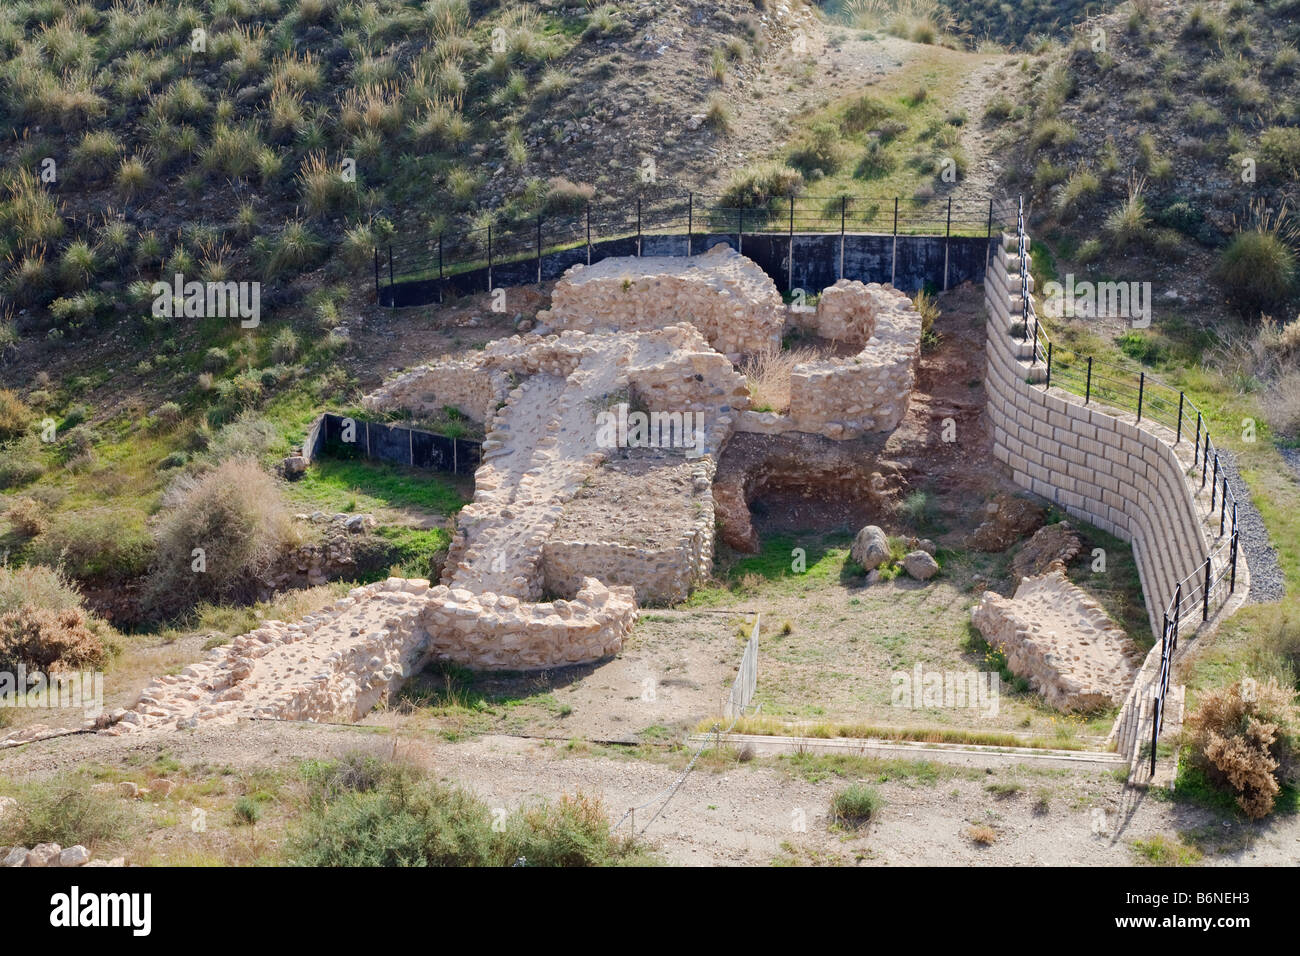 Los Millares de sitio arqueológico de la Edad de Cobre, cerca de Santa Fe de Mondujar Provincia de Almeria España. Puerta y paredes. Foto de stock